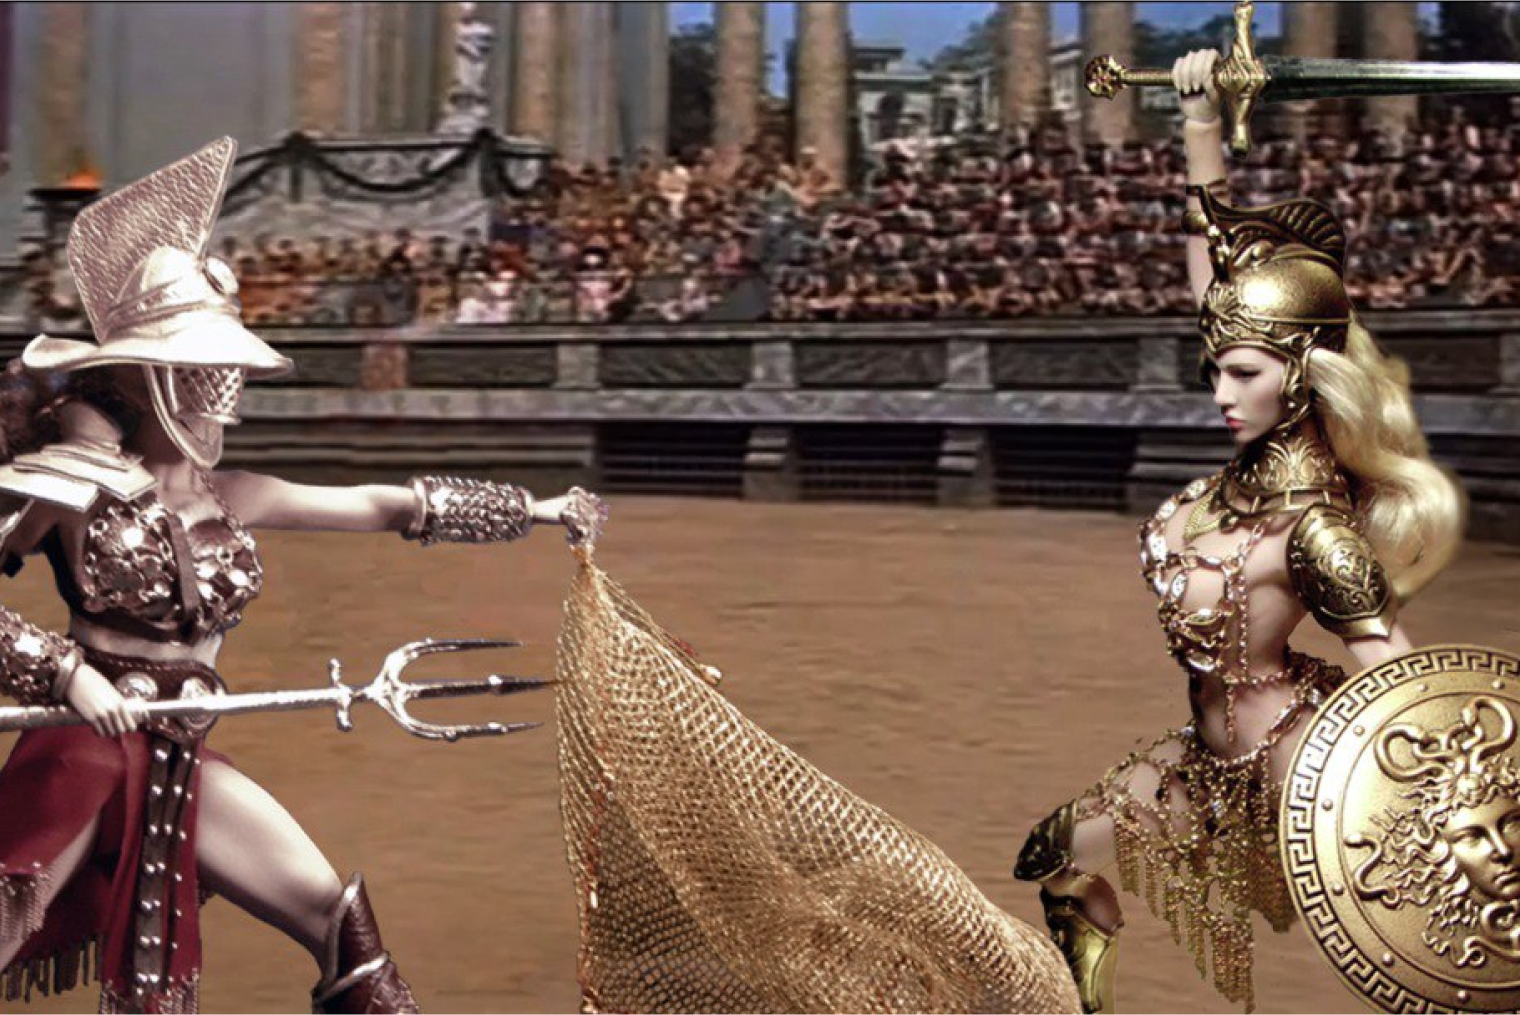 Гладиаторша Древнего Рима сражается со спартанкой Древней Греции, на арене Колизея